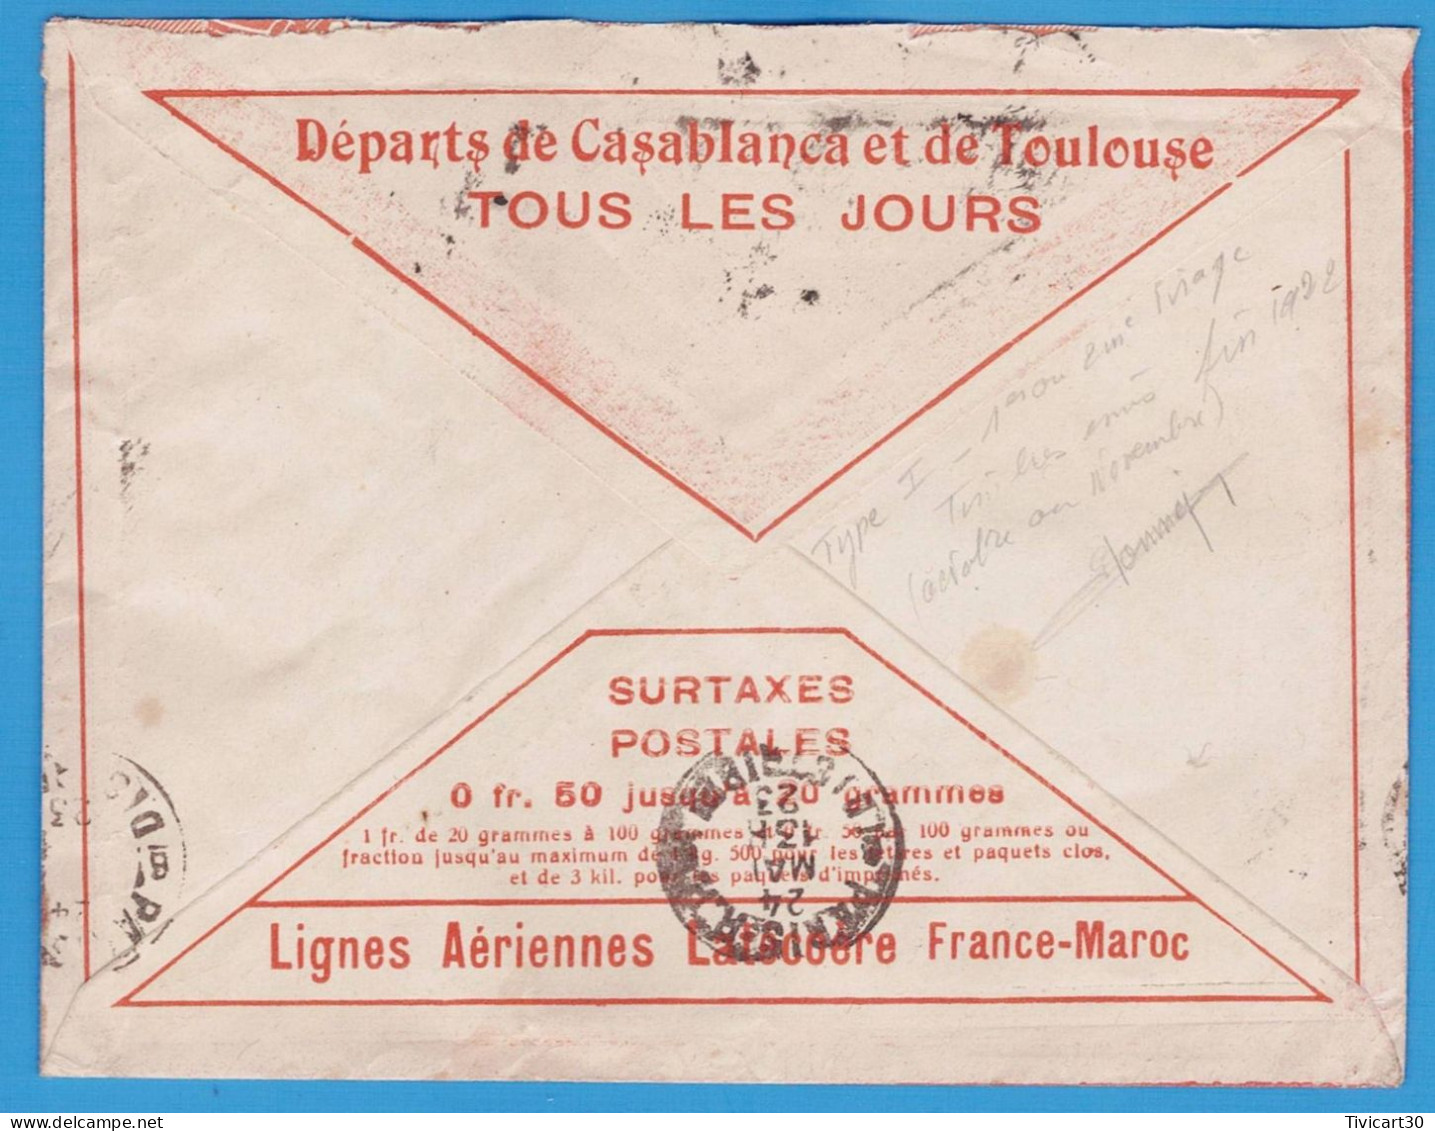 LETTRE PAR AVION DE 1923 - LIGNES AERIENNES LATECOERE FRANCE-MAROC - CASABLANCA (MAROC) POUR PARIS - Luftpost